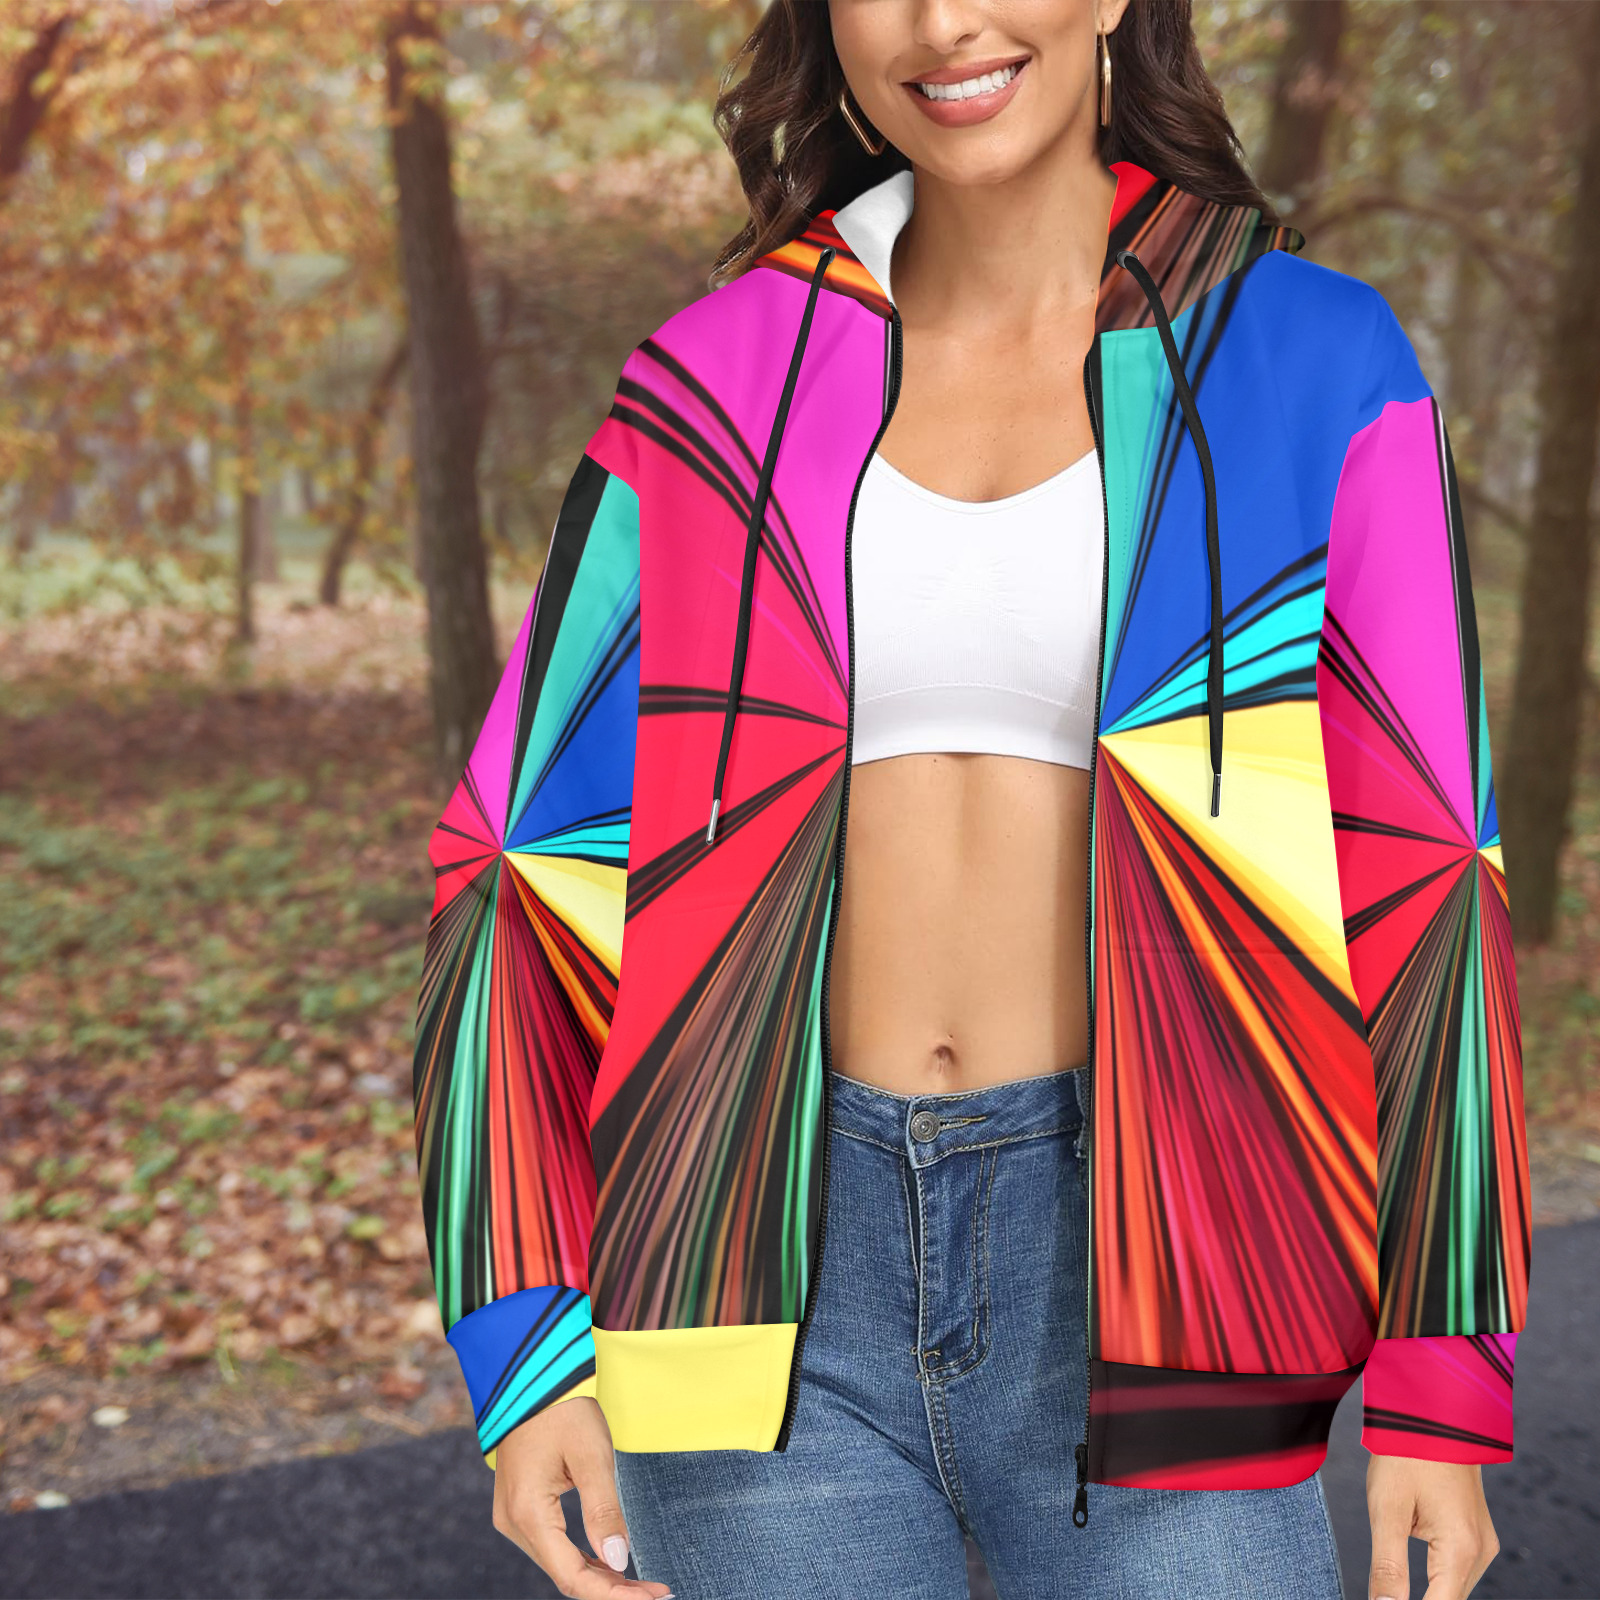 Colorful Rainbow Vortex 608 Women's Fleece Full-Zip Hoodie (Model H60)